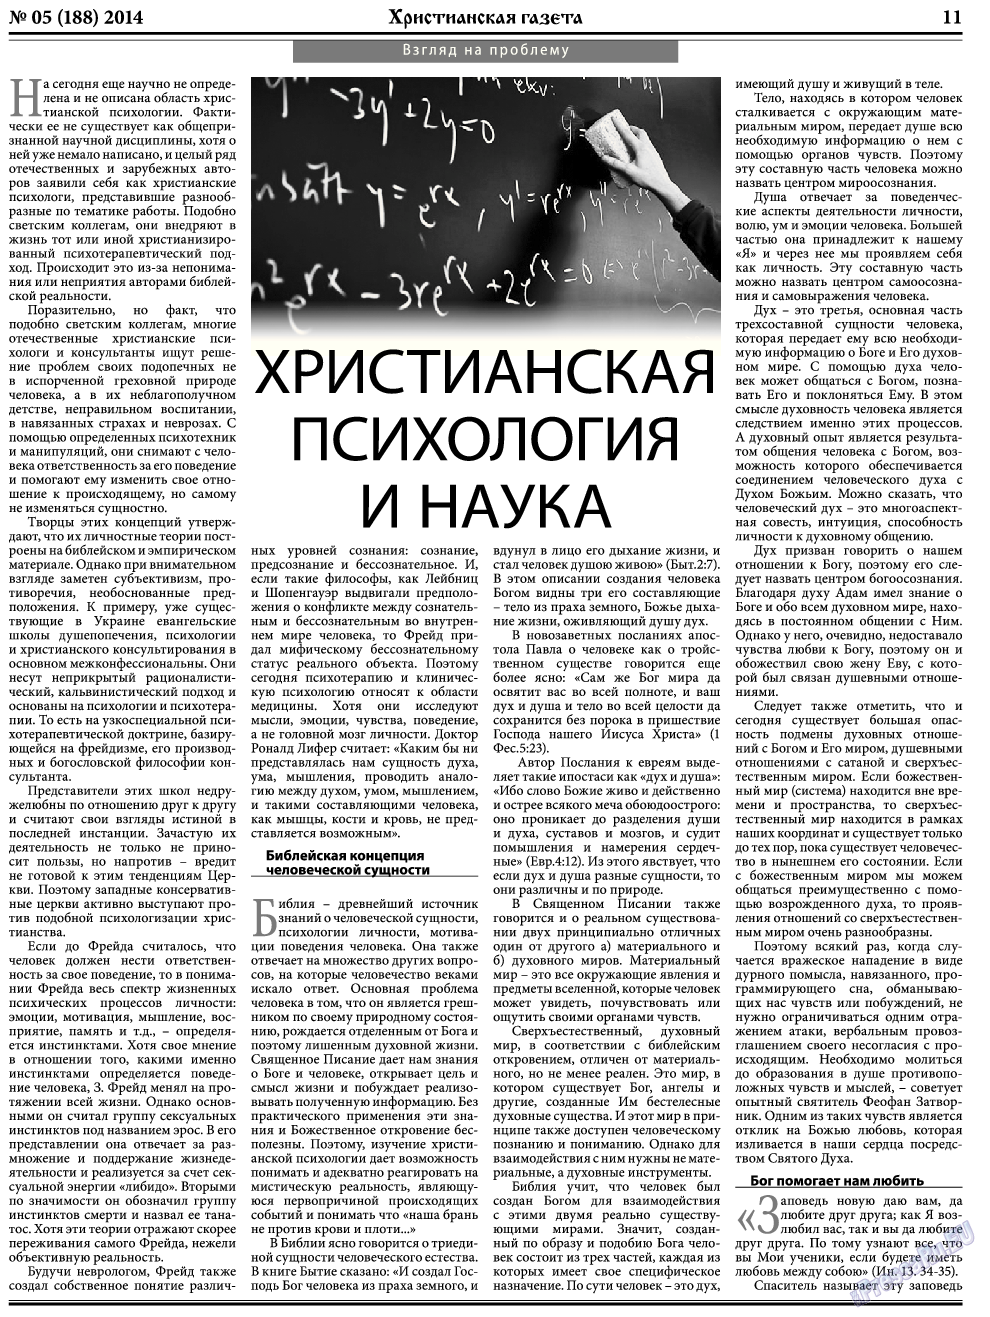 Христианская газета (газета). 2014 год, номер 5, стр. 11